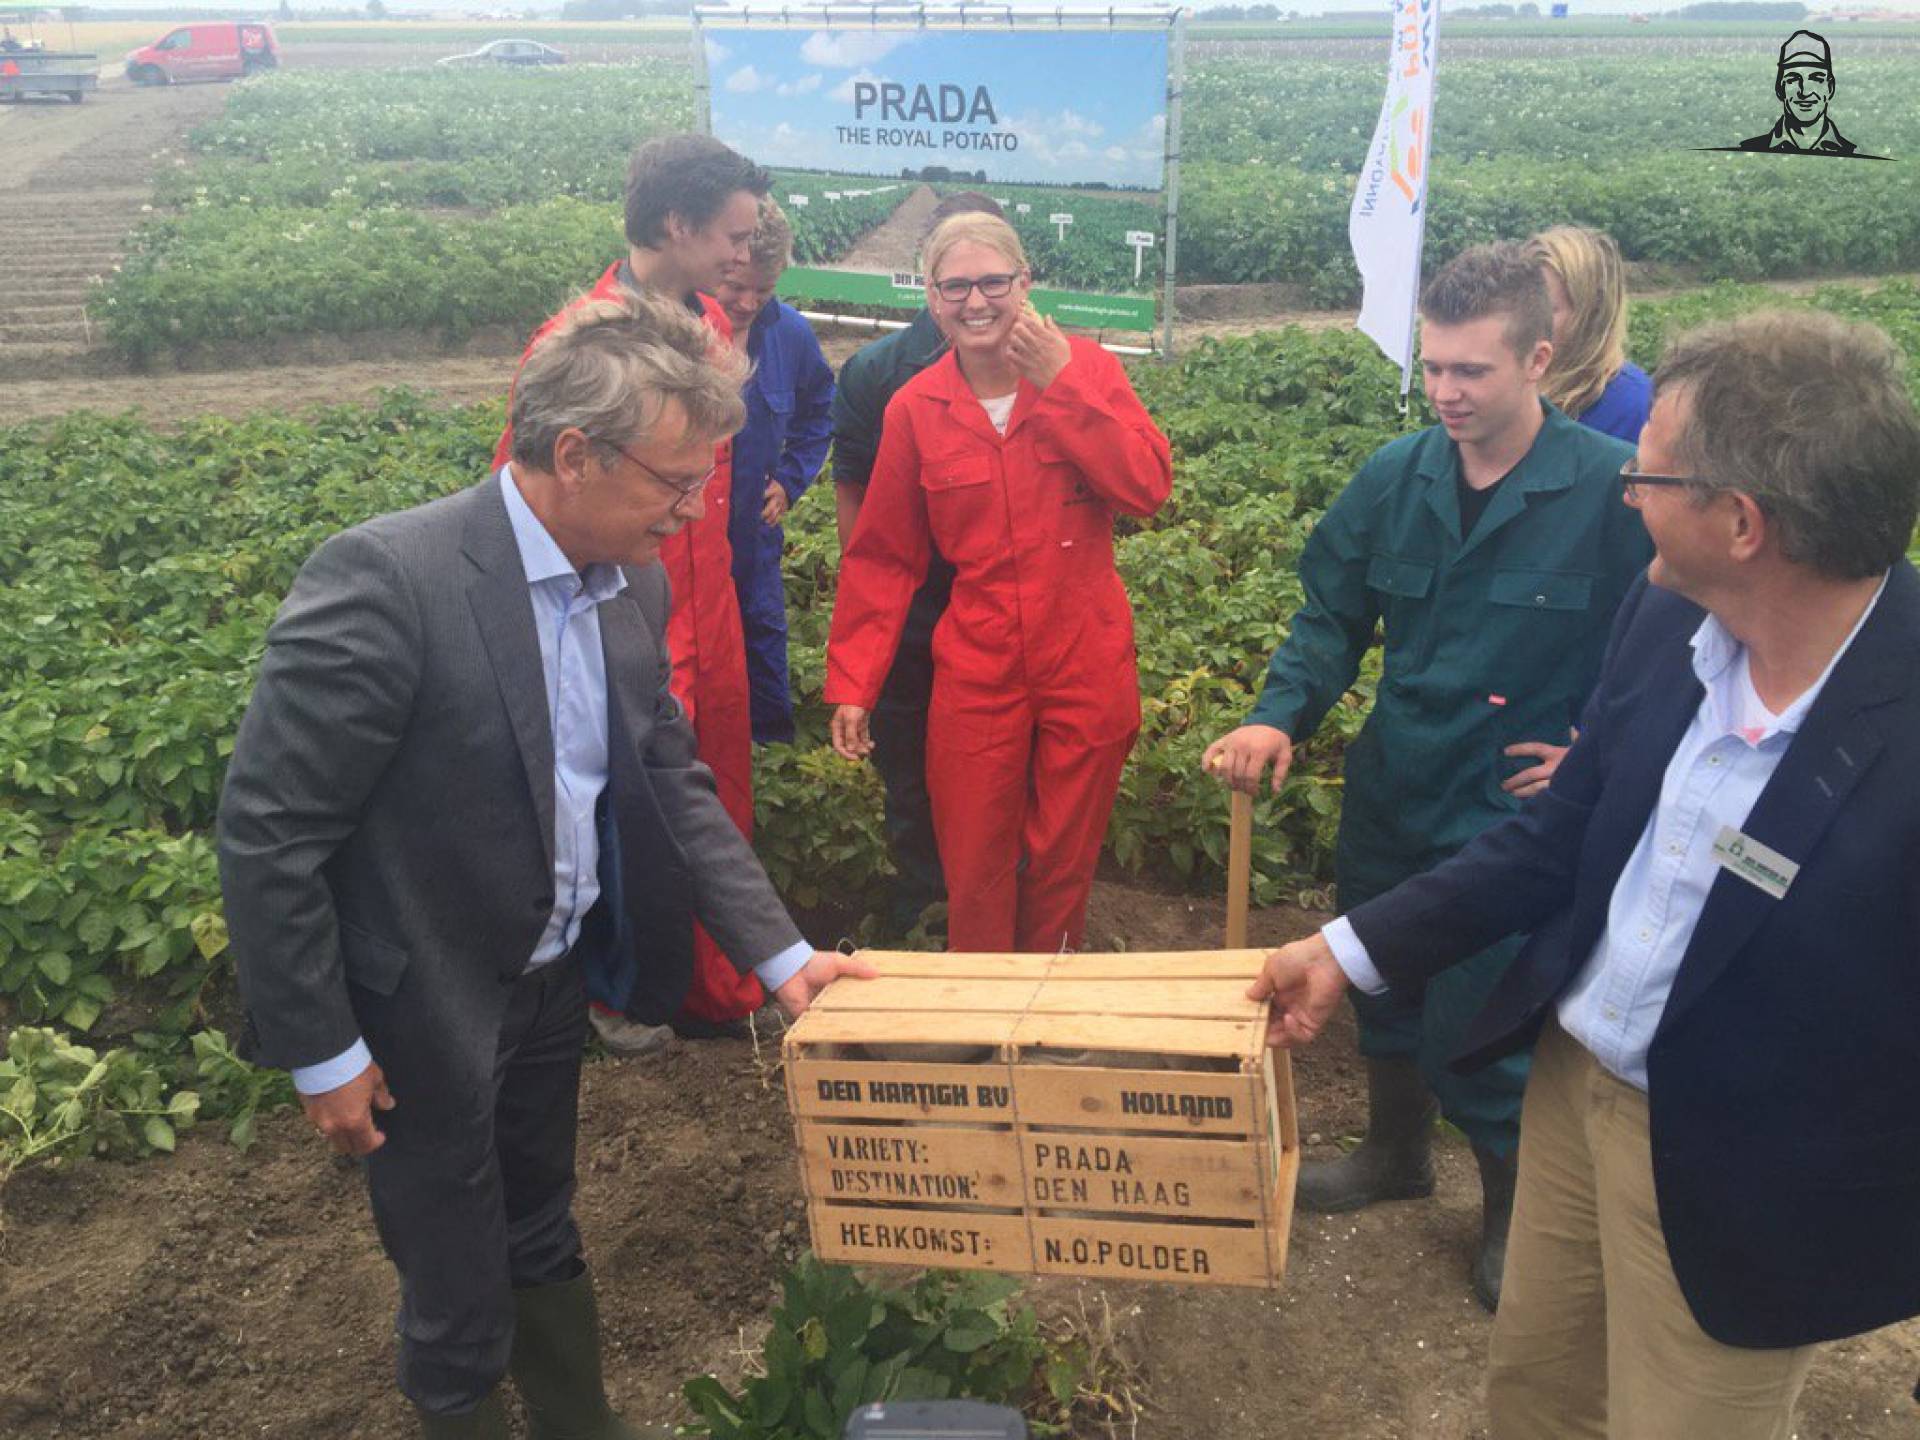 De eerste Prada aardappels zijn geoogst in de Noordoostpolder van Nieuwsgrazer